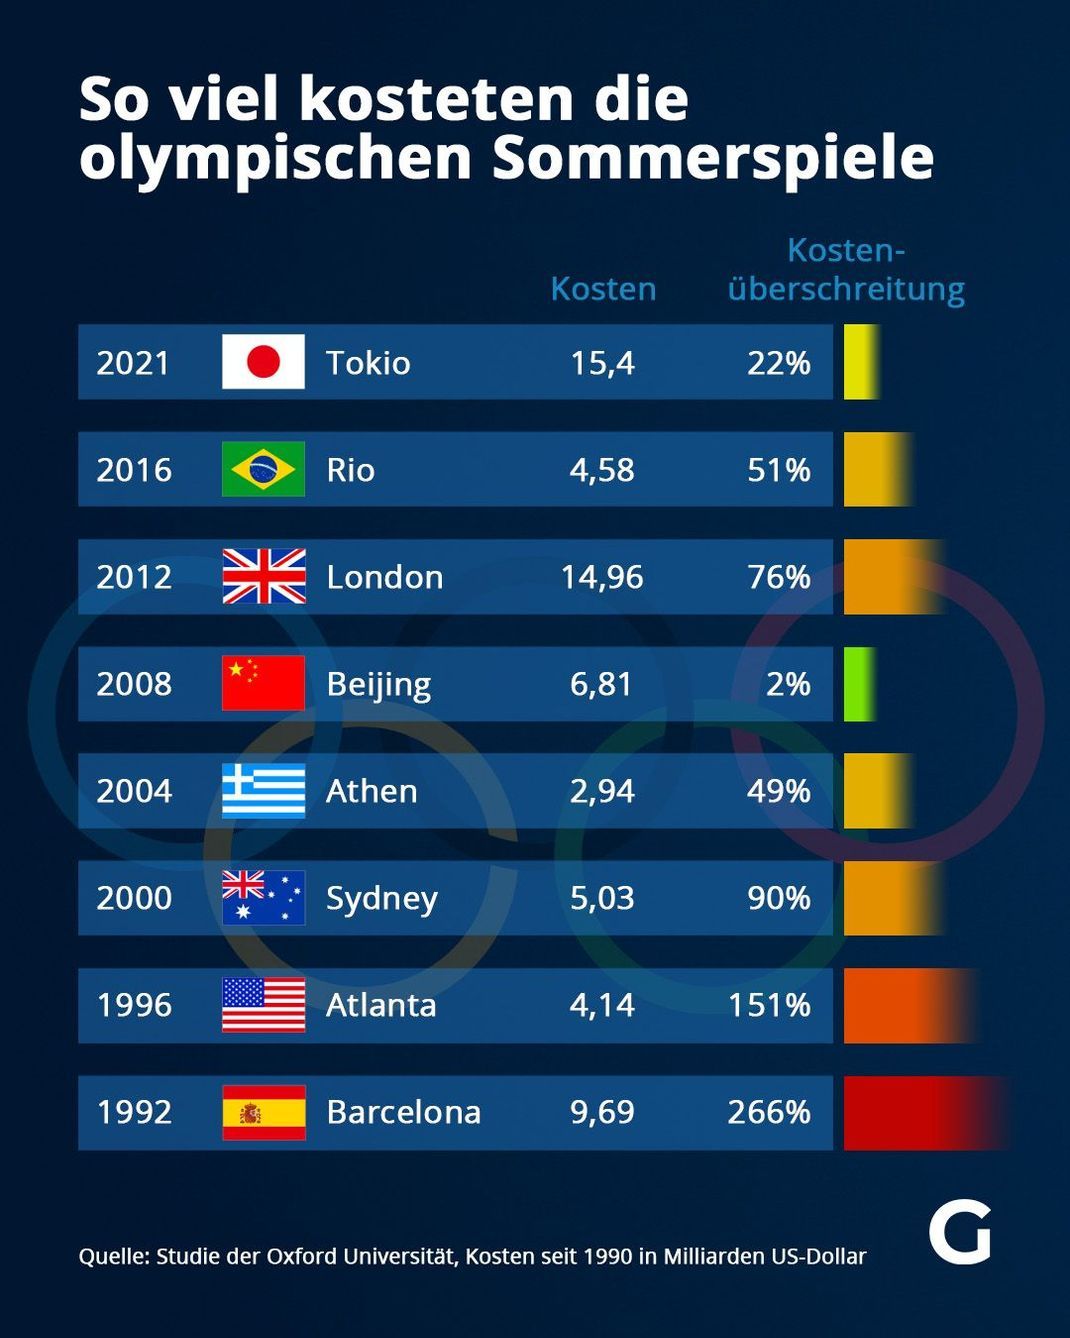 So viel kosteten die olympischen Sommerspiele